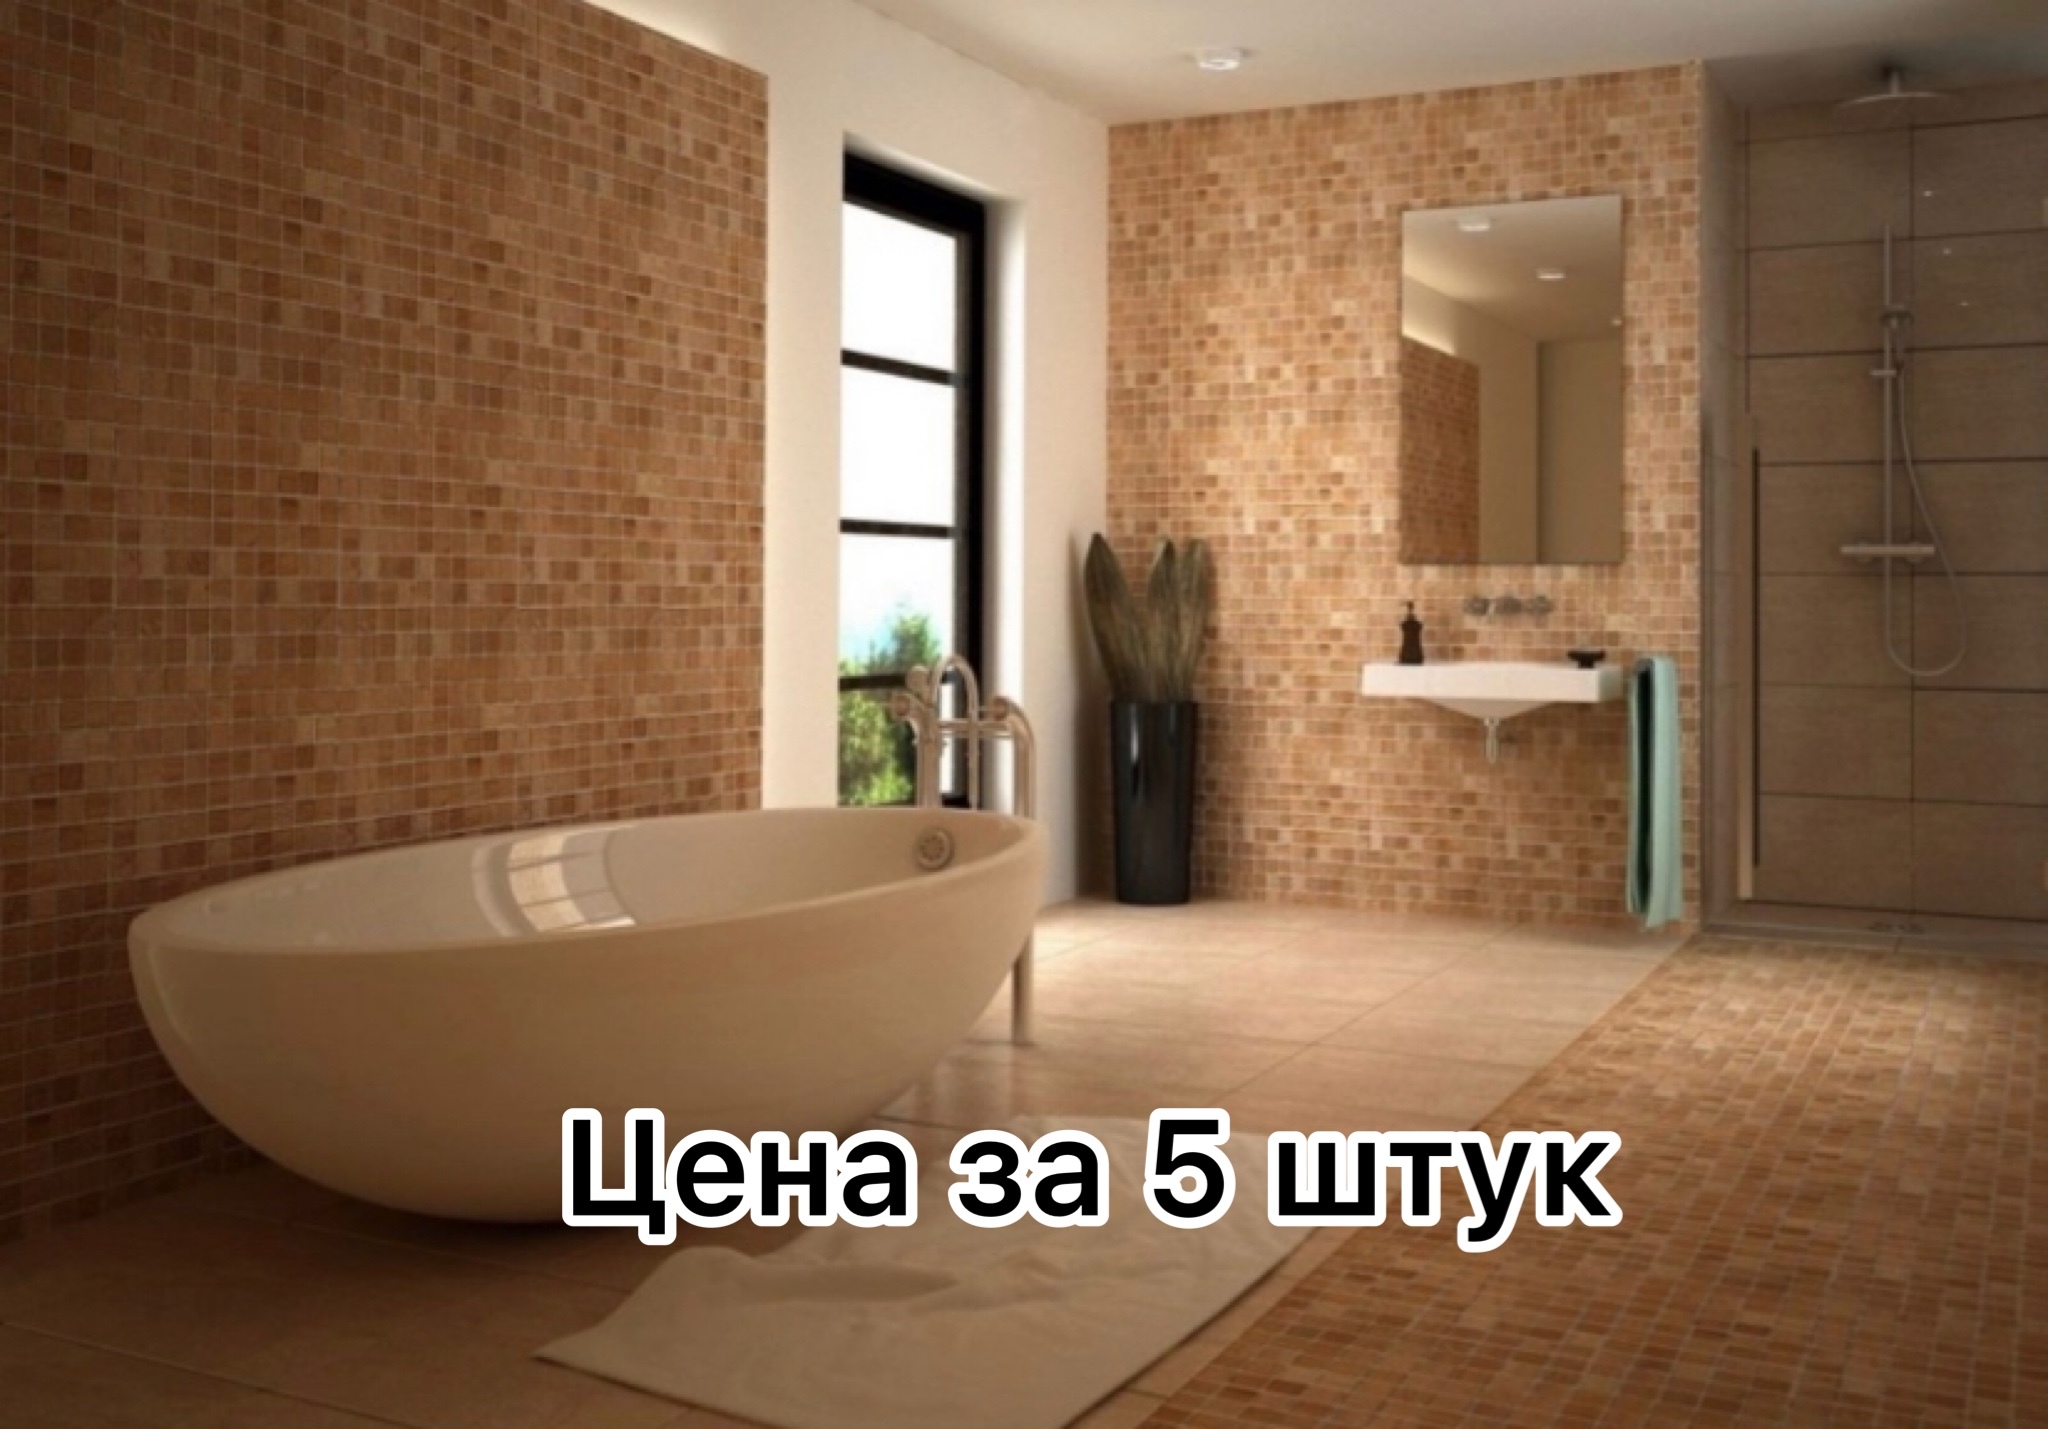 Плитка для ванной камень. Плитка для ванной. Мозаика в ванной комнате. Интерьер ванной с мозаикой и плиткой. Мозаичная плитка для ванной.